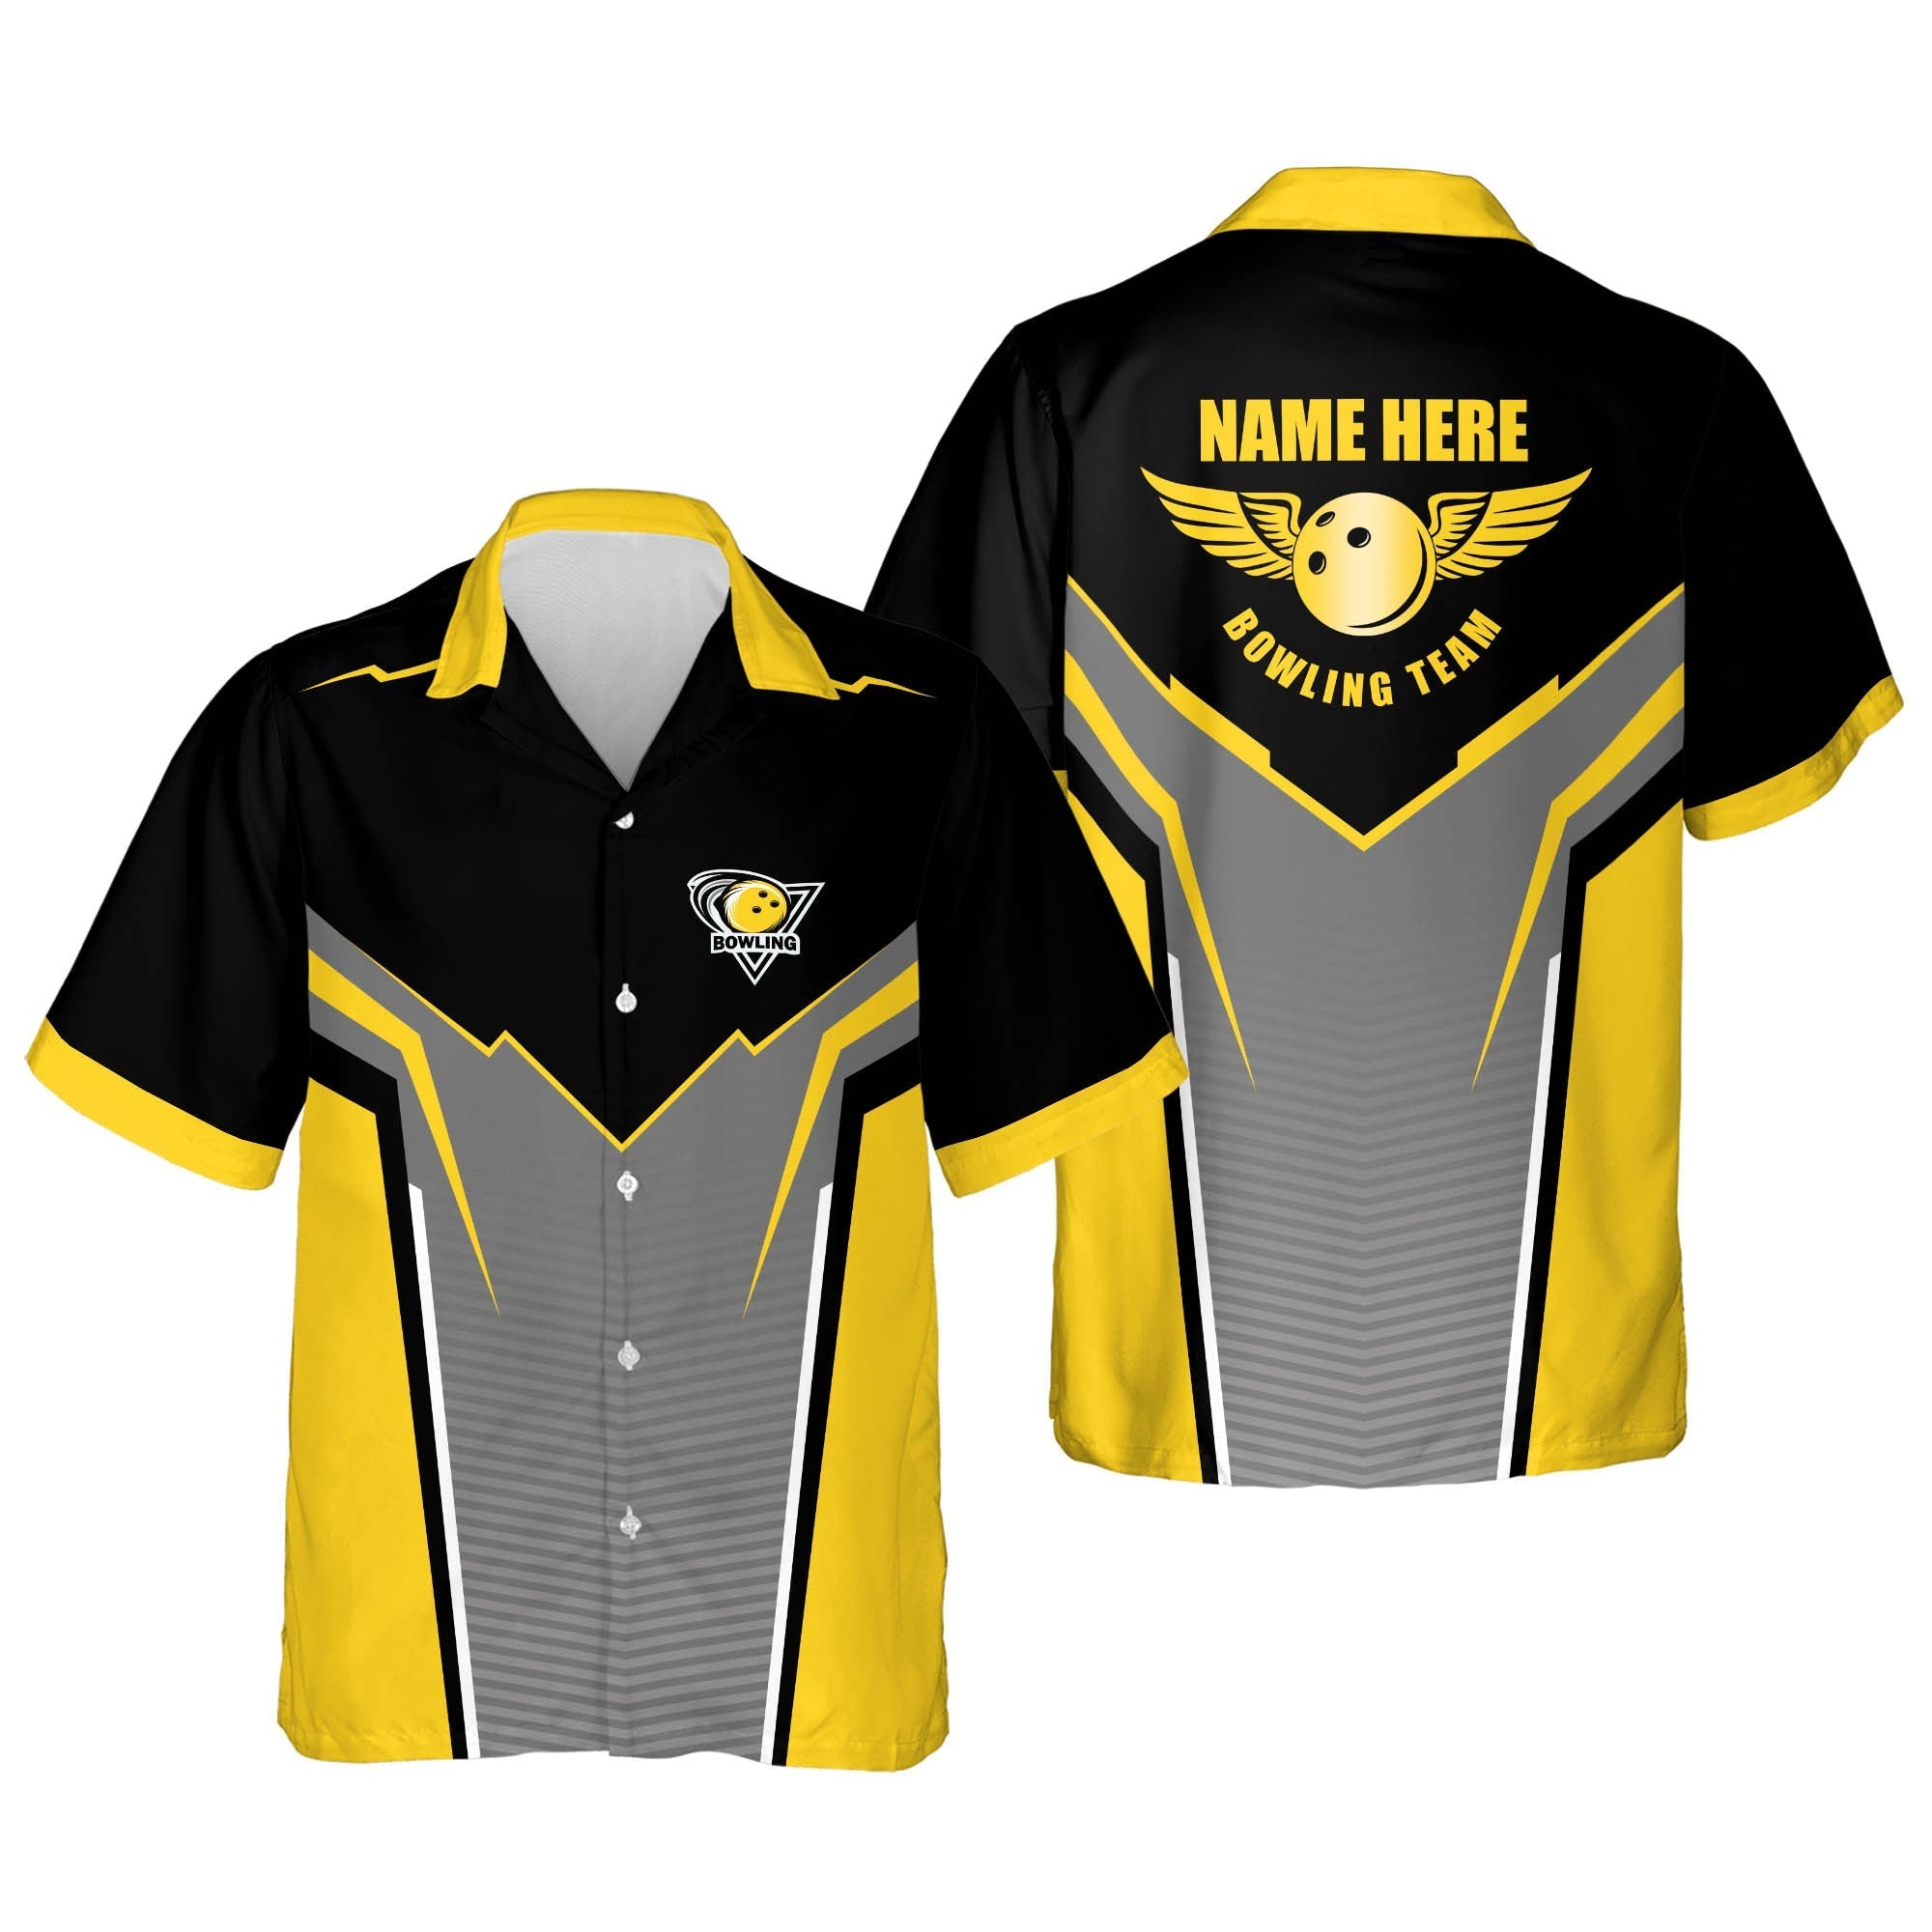 Lovelypod Bowling Short Sleeve Hawaiian shirt for men and women/ Summer gift for Bowling team shirt